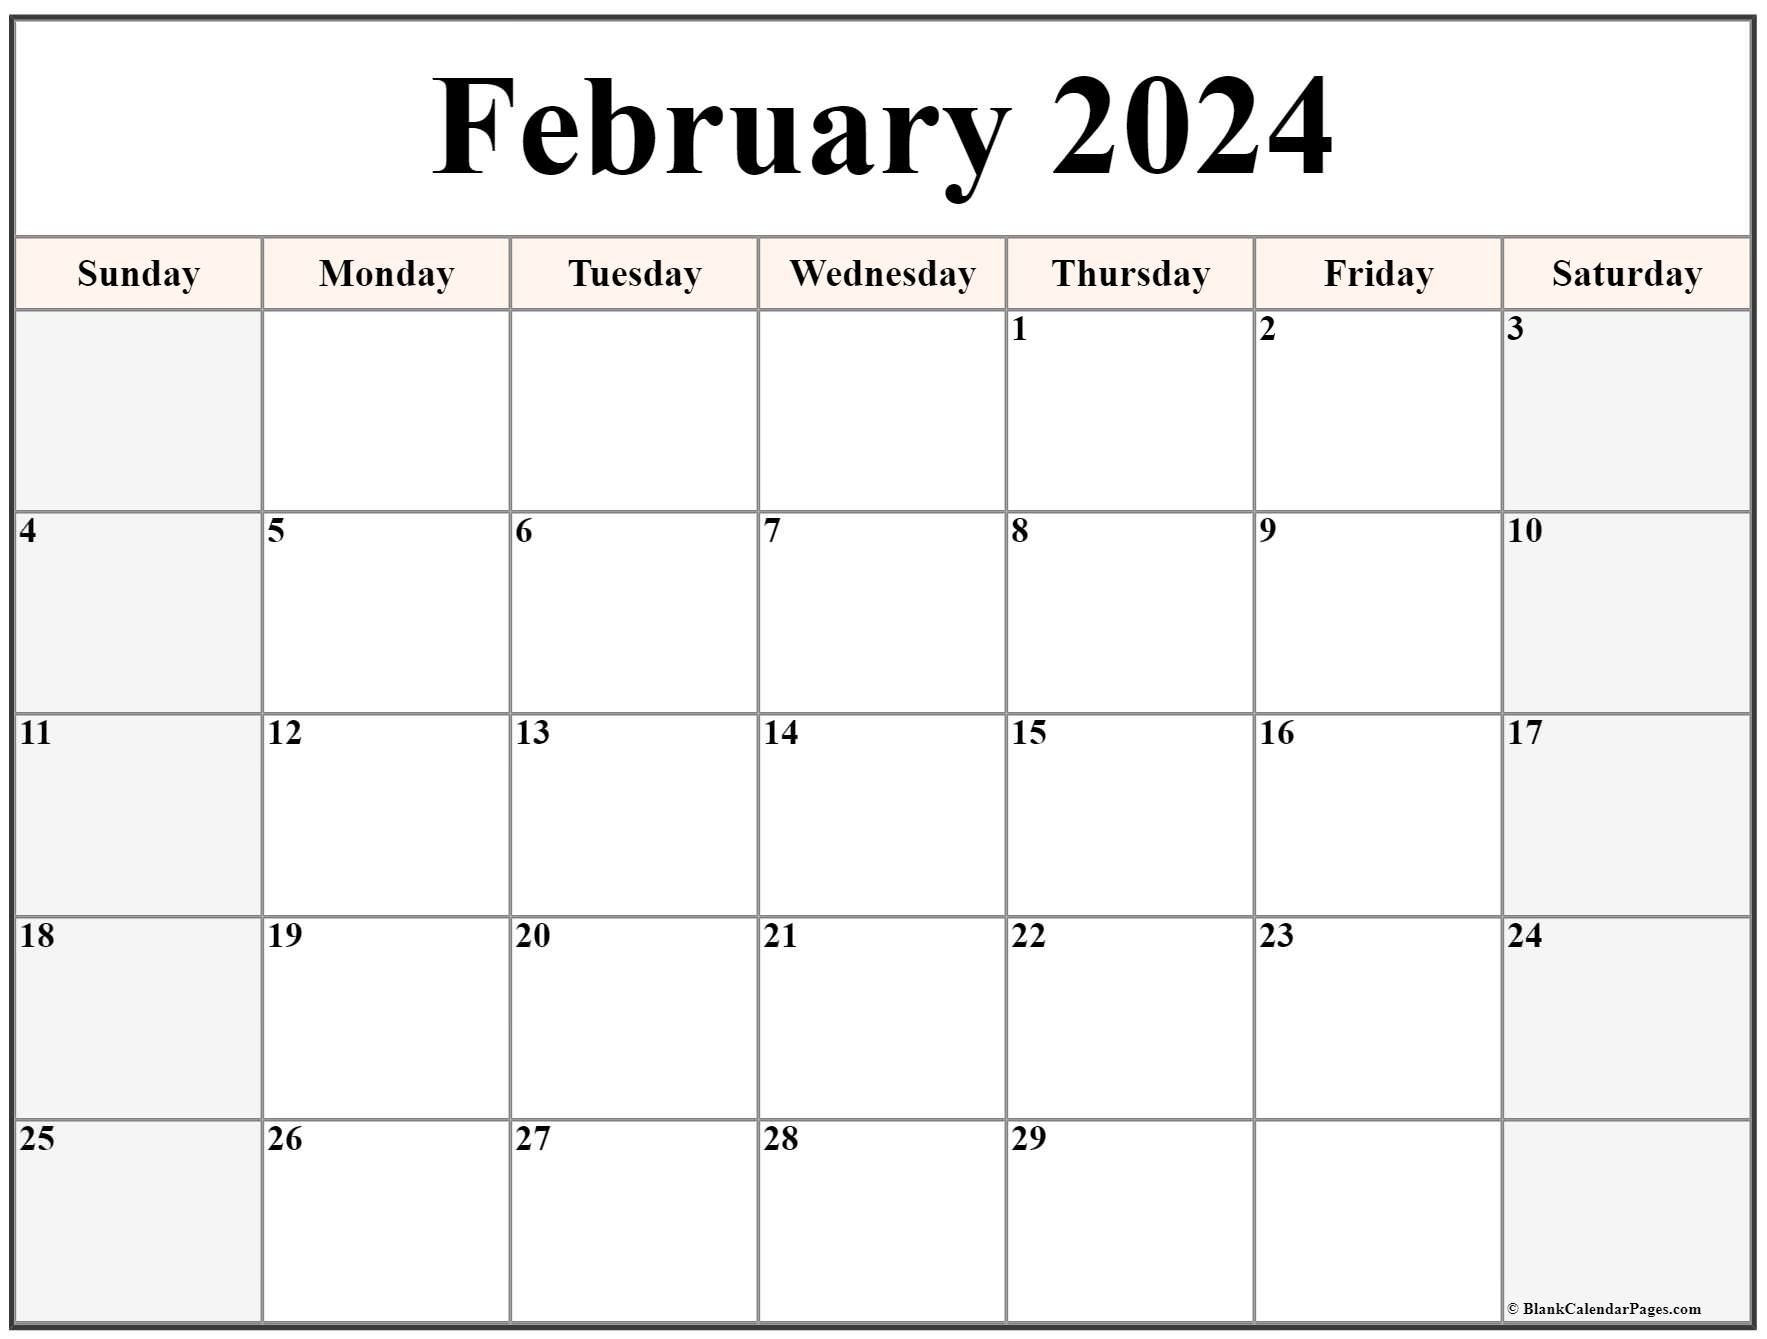 February 2024 Calendar | Free Printable Calendar | Free Printable Calendar 2024 Vertex